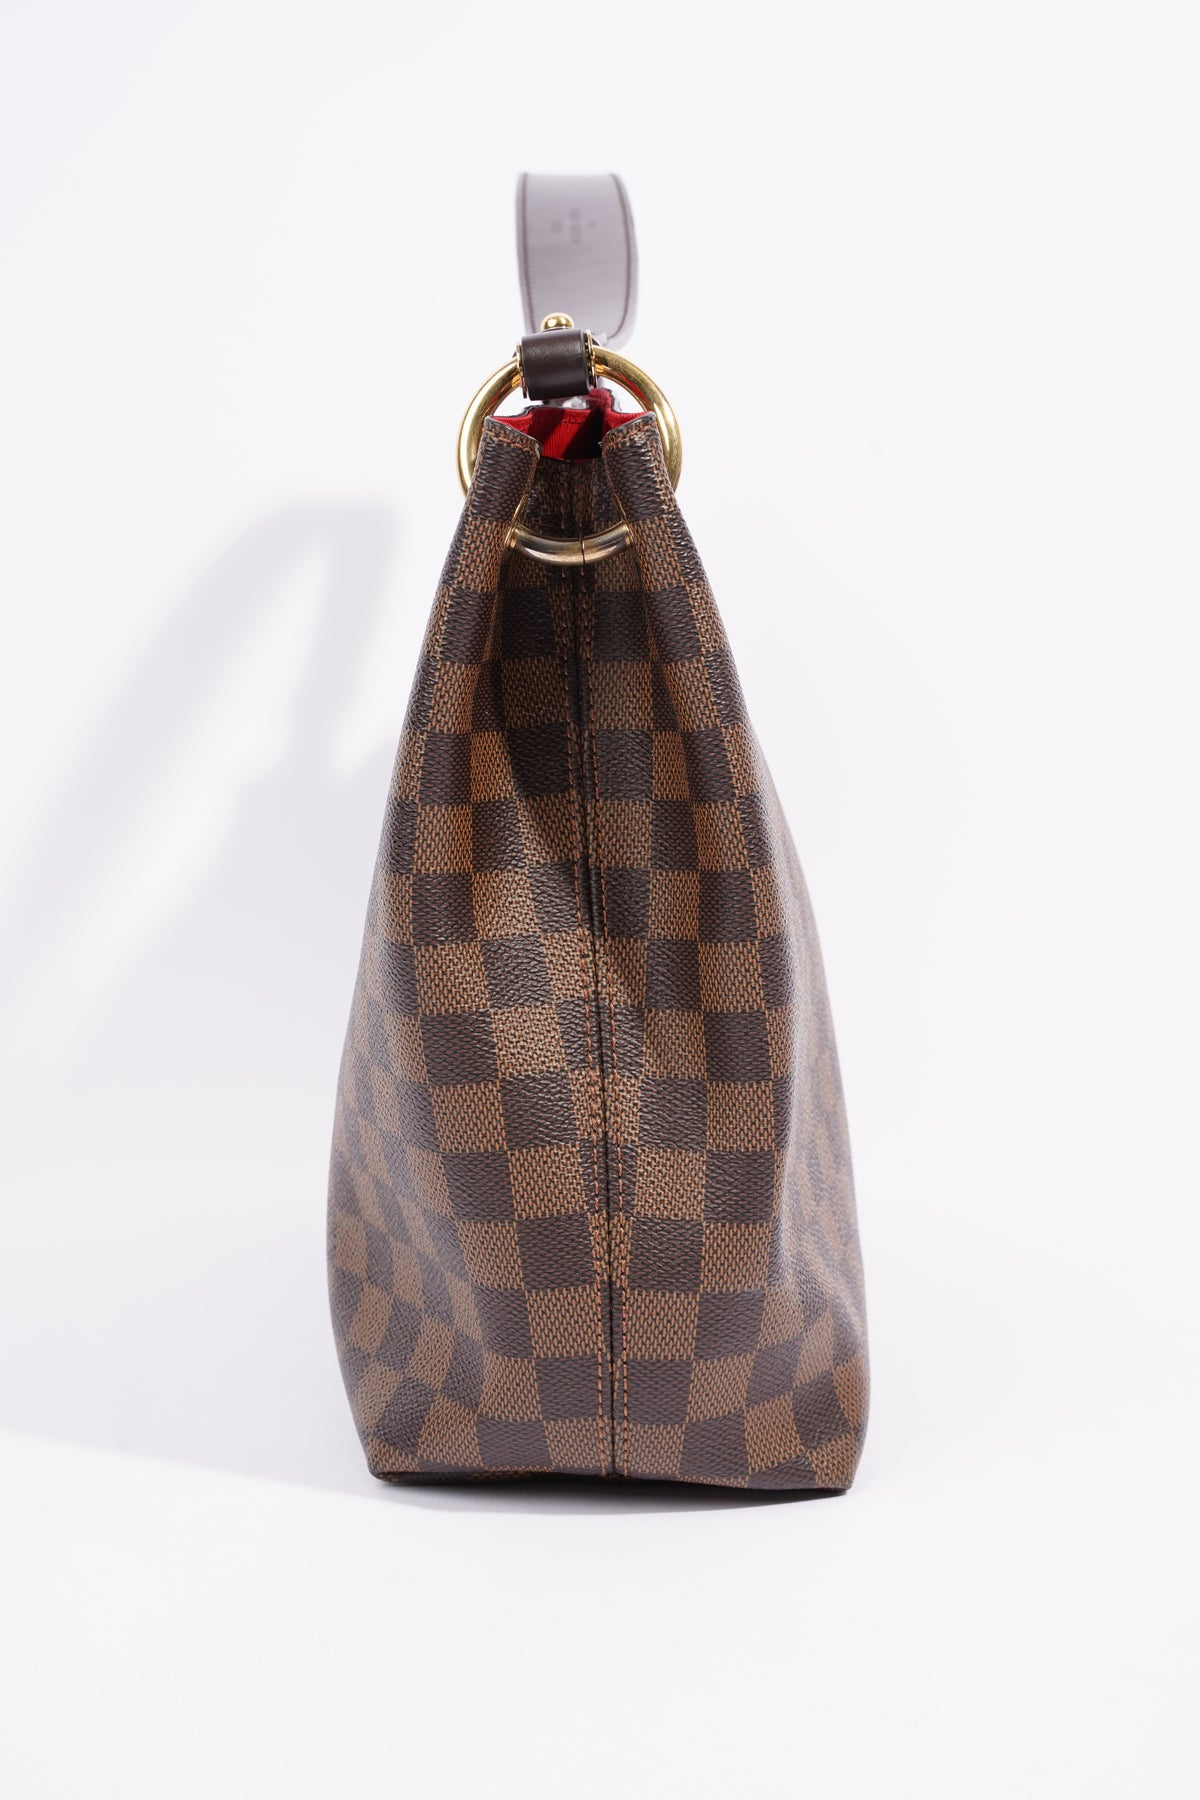 Louis Vuitton Graceful PM Damier Ebene (RRP £1,360)